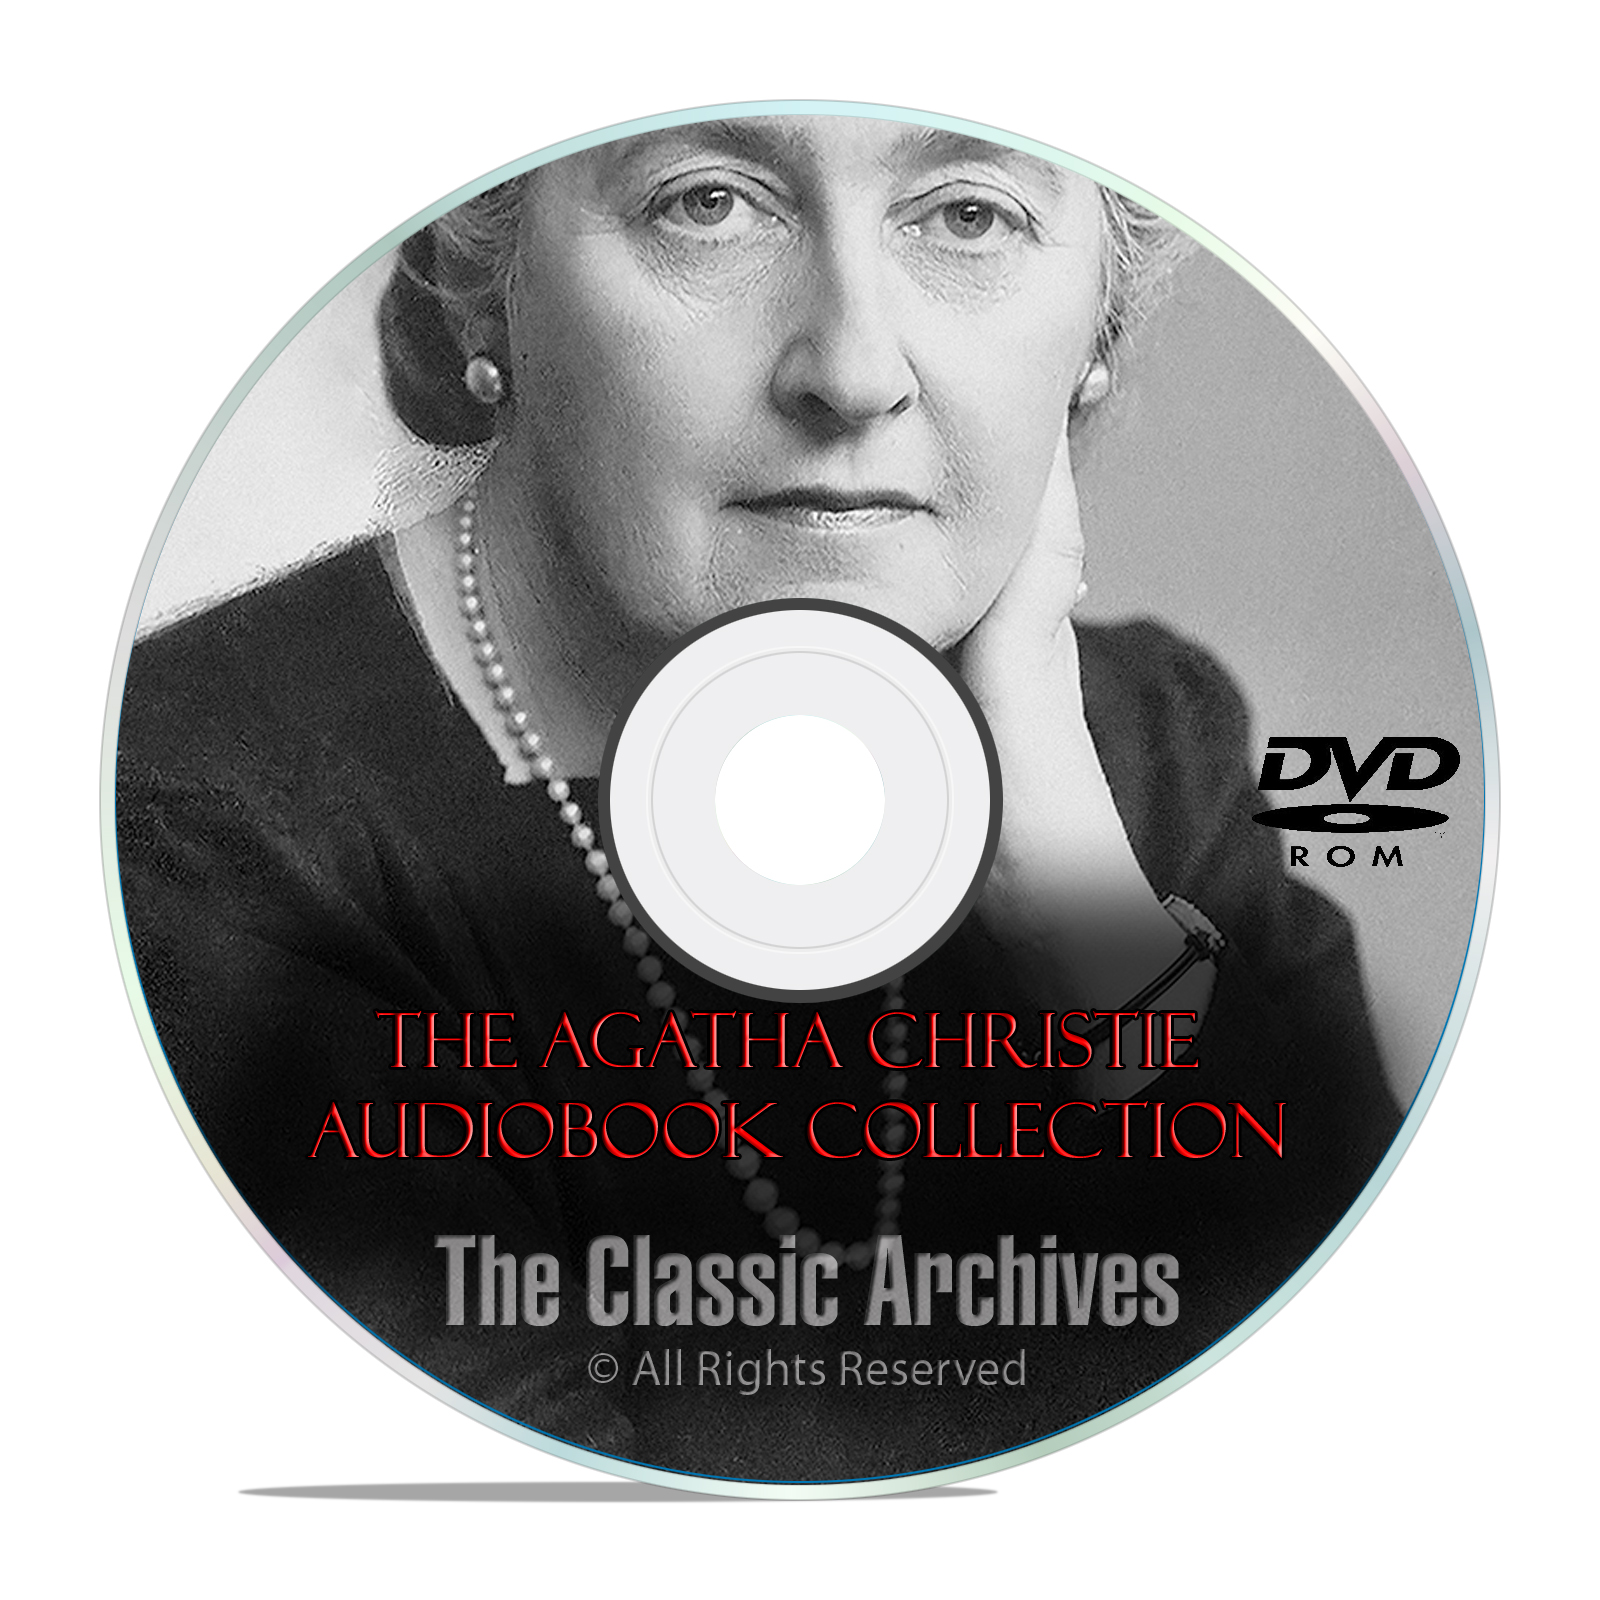 58 Agatha Christie Mystery Books, Murder Suspense, Thriller, Poirot OTR DVD